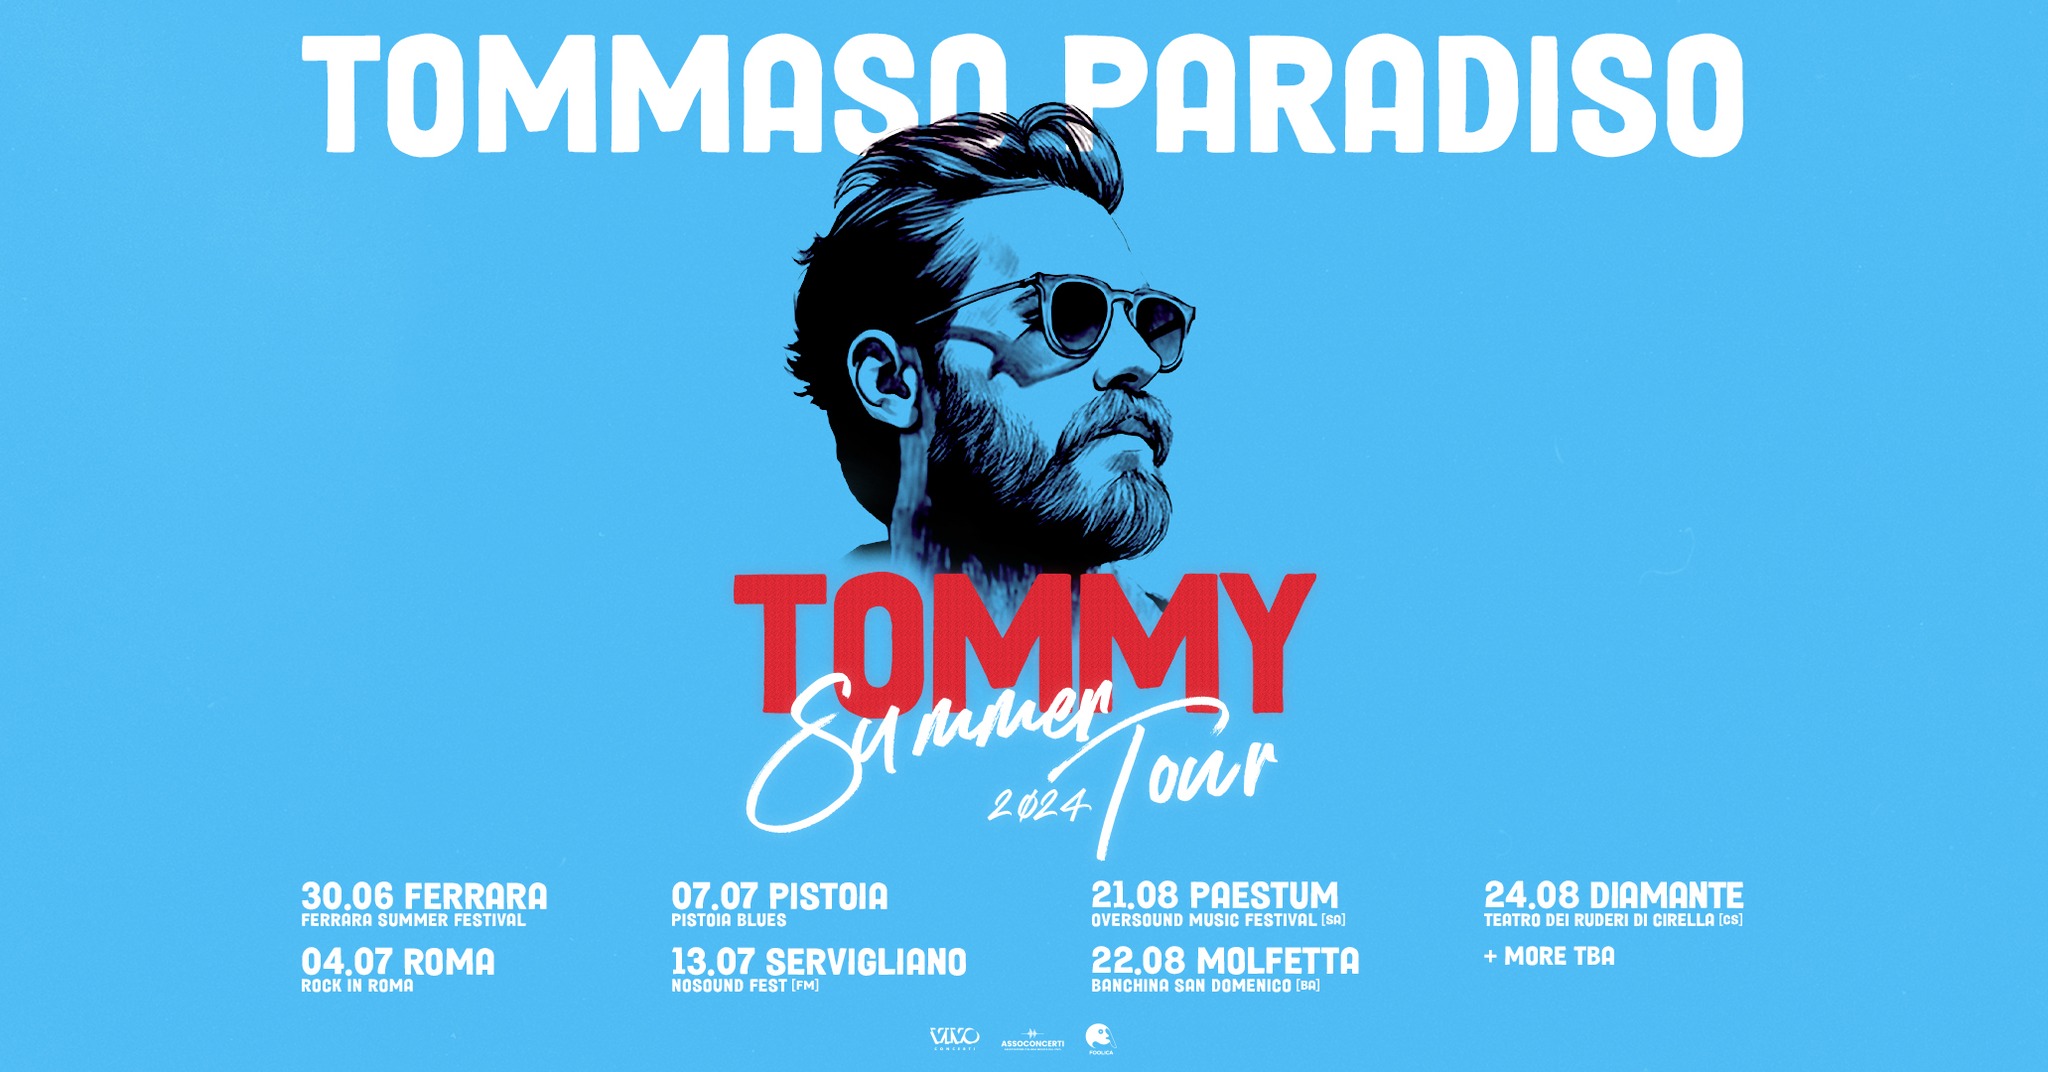 Tommaso Paradiso annuncia le date del tour estivo. C'è anche Cirella 